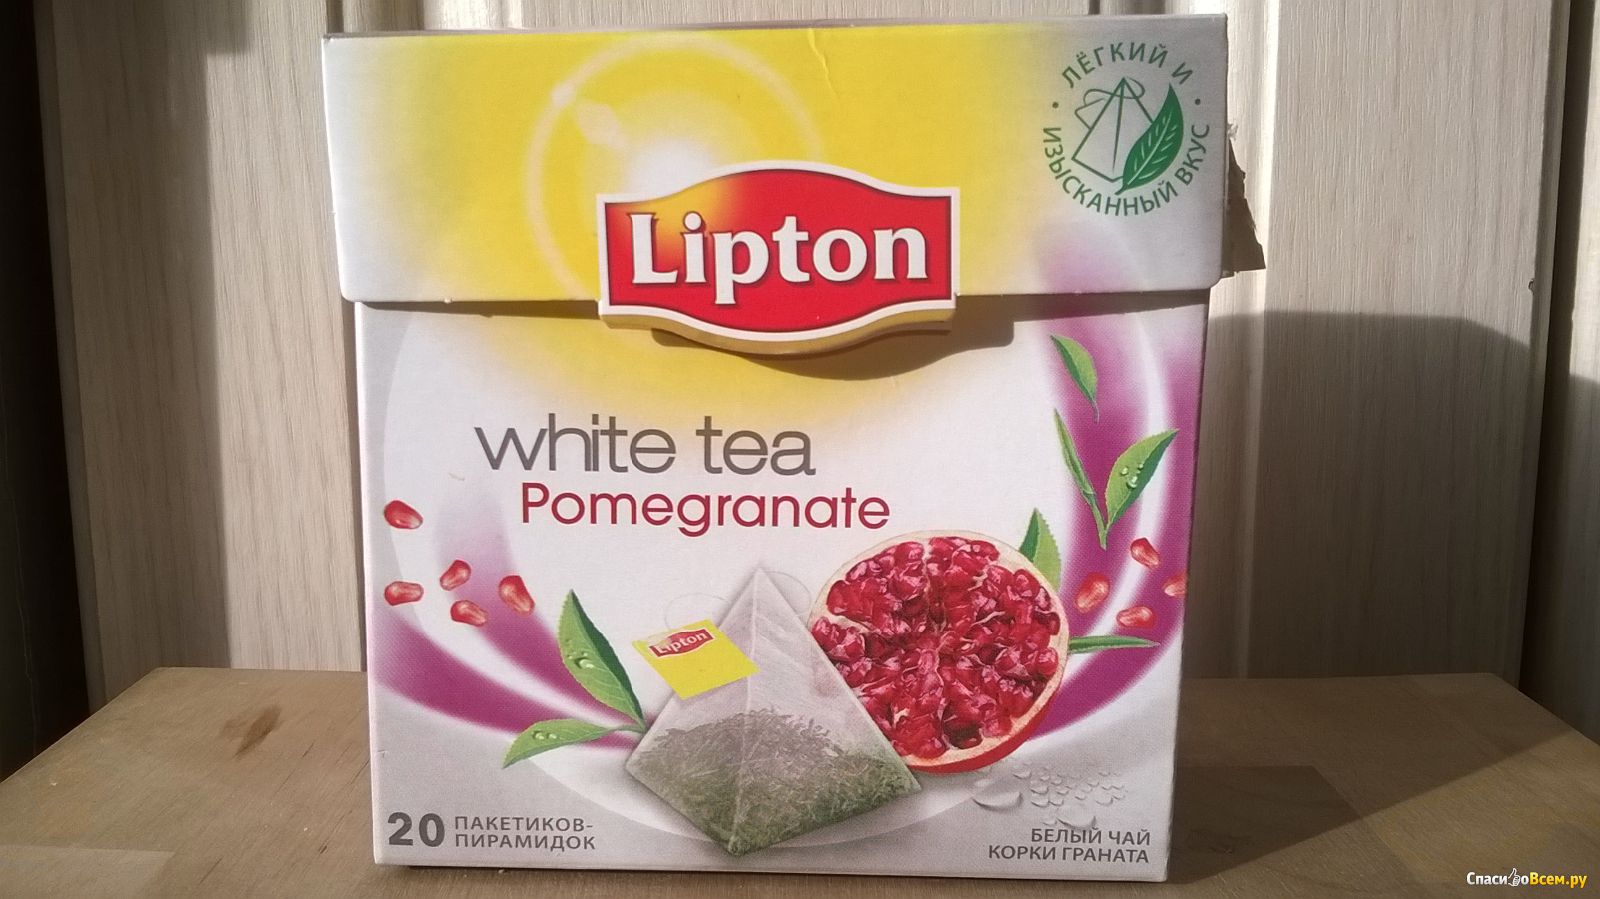 Белый липтон. Липтон белый чай в пирамидках. Чай Липтон белый с гранатом. Чай Липтон 1000 пакетиков. Липтон чай белый в пакетиках.